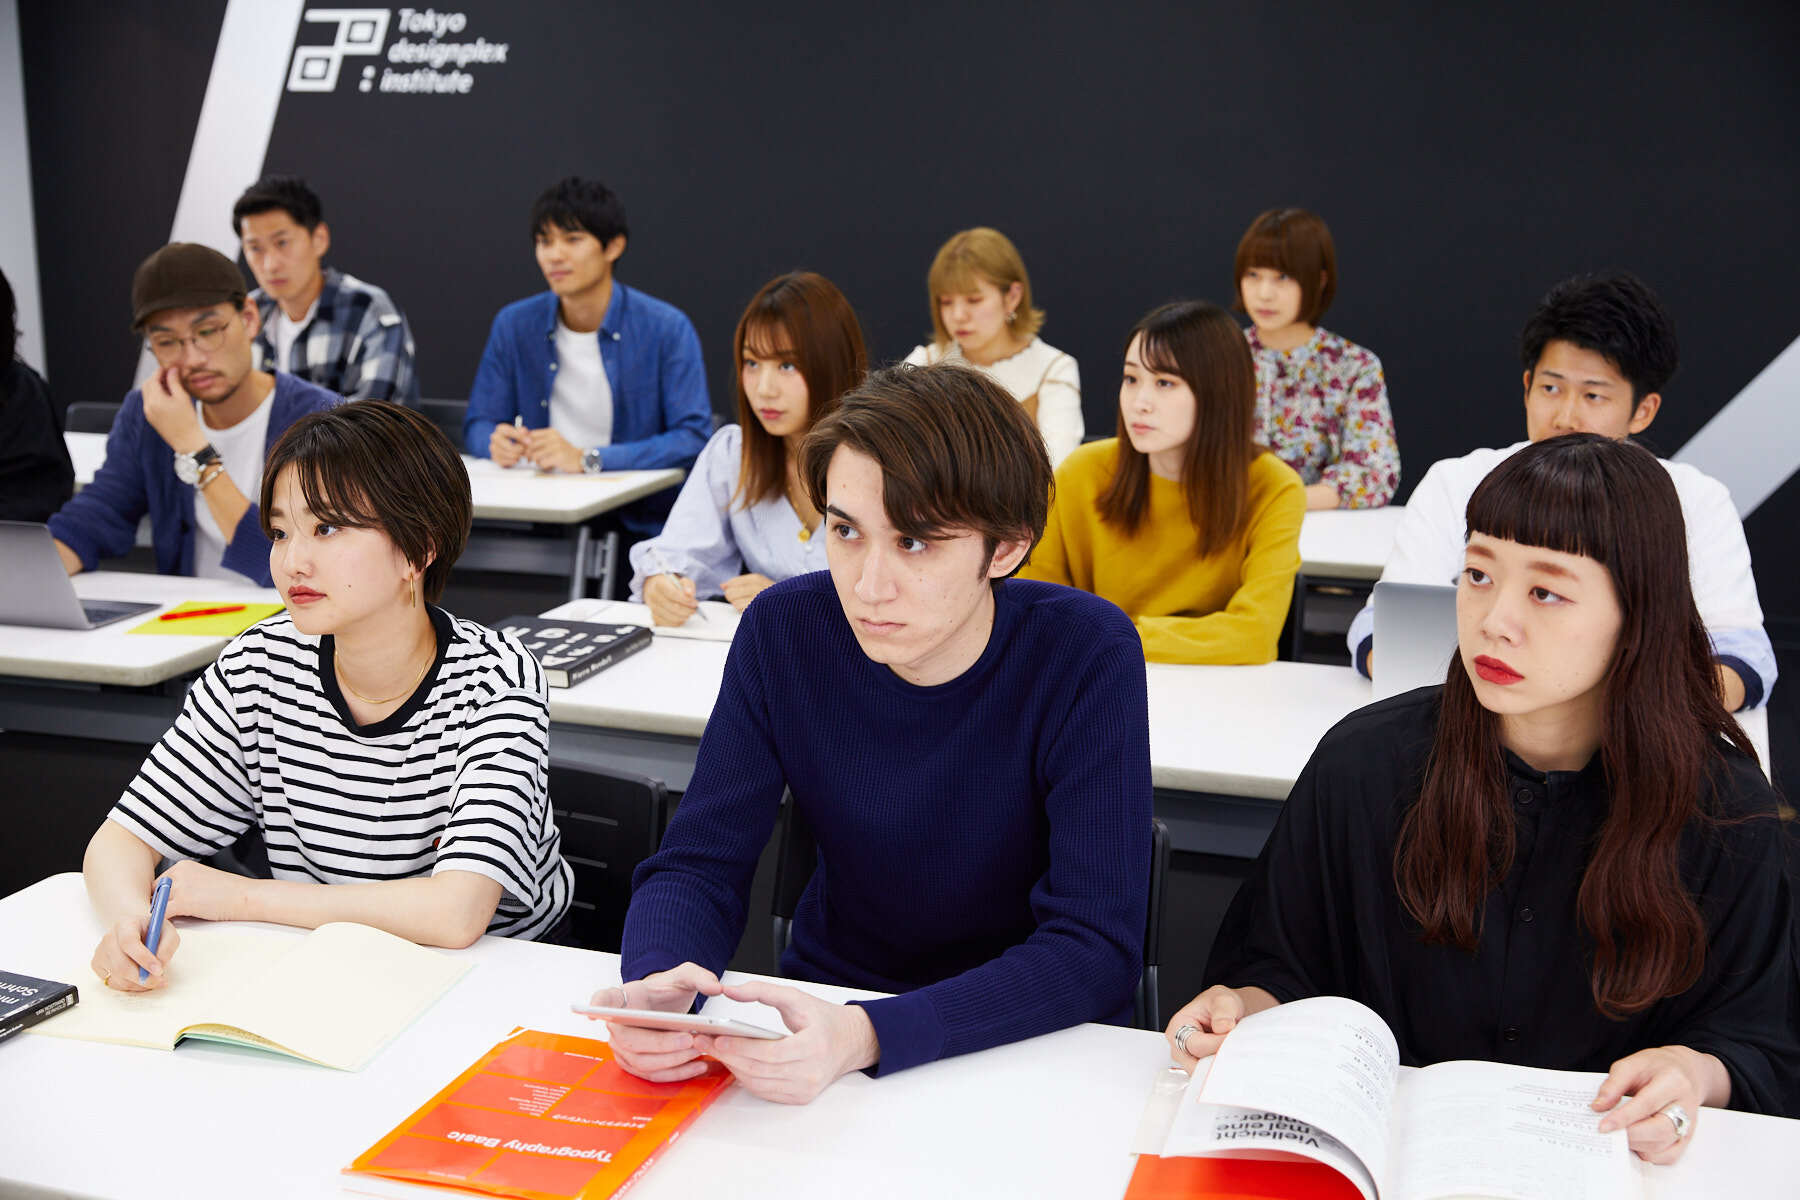 次代のwebクリエイティブ業界のリーダー育成する新コースを東京デザインプレックス研究所が年4月開講 東京デザインプレックス研究所のプレスリリース